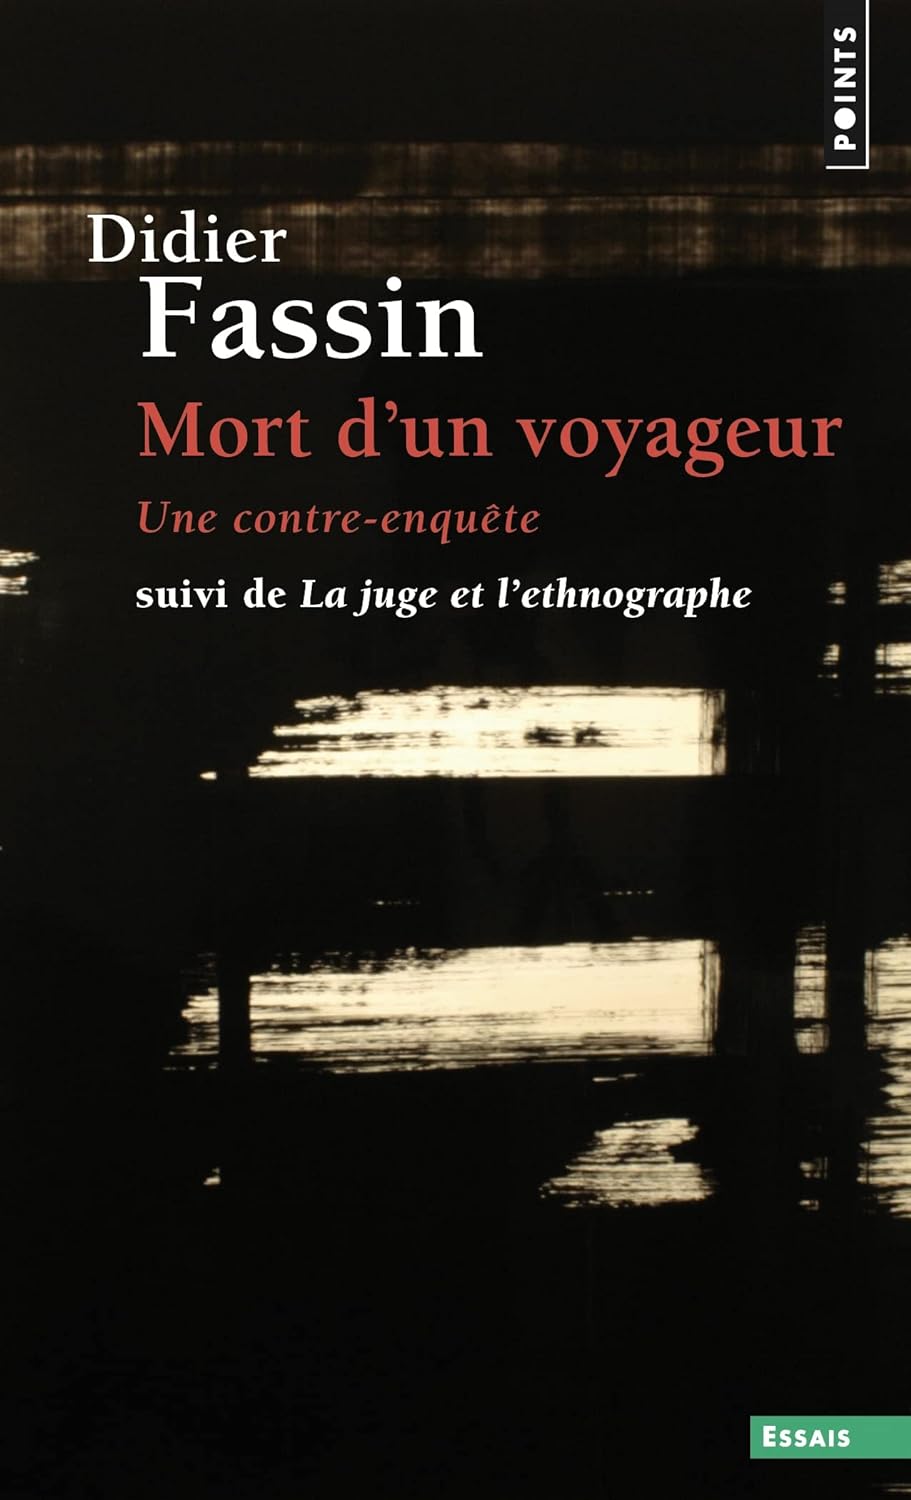 Didier Fassin: Mort d'un voyageur (Français language, 2023, Points)